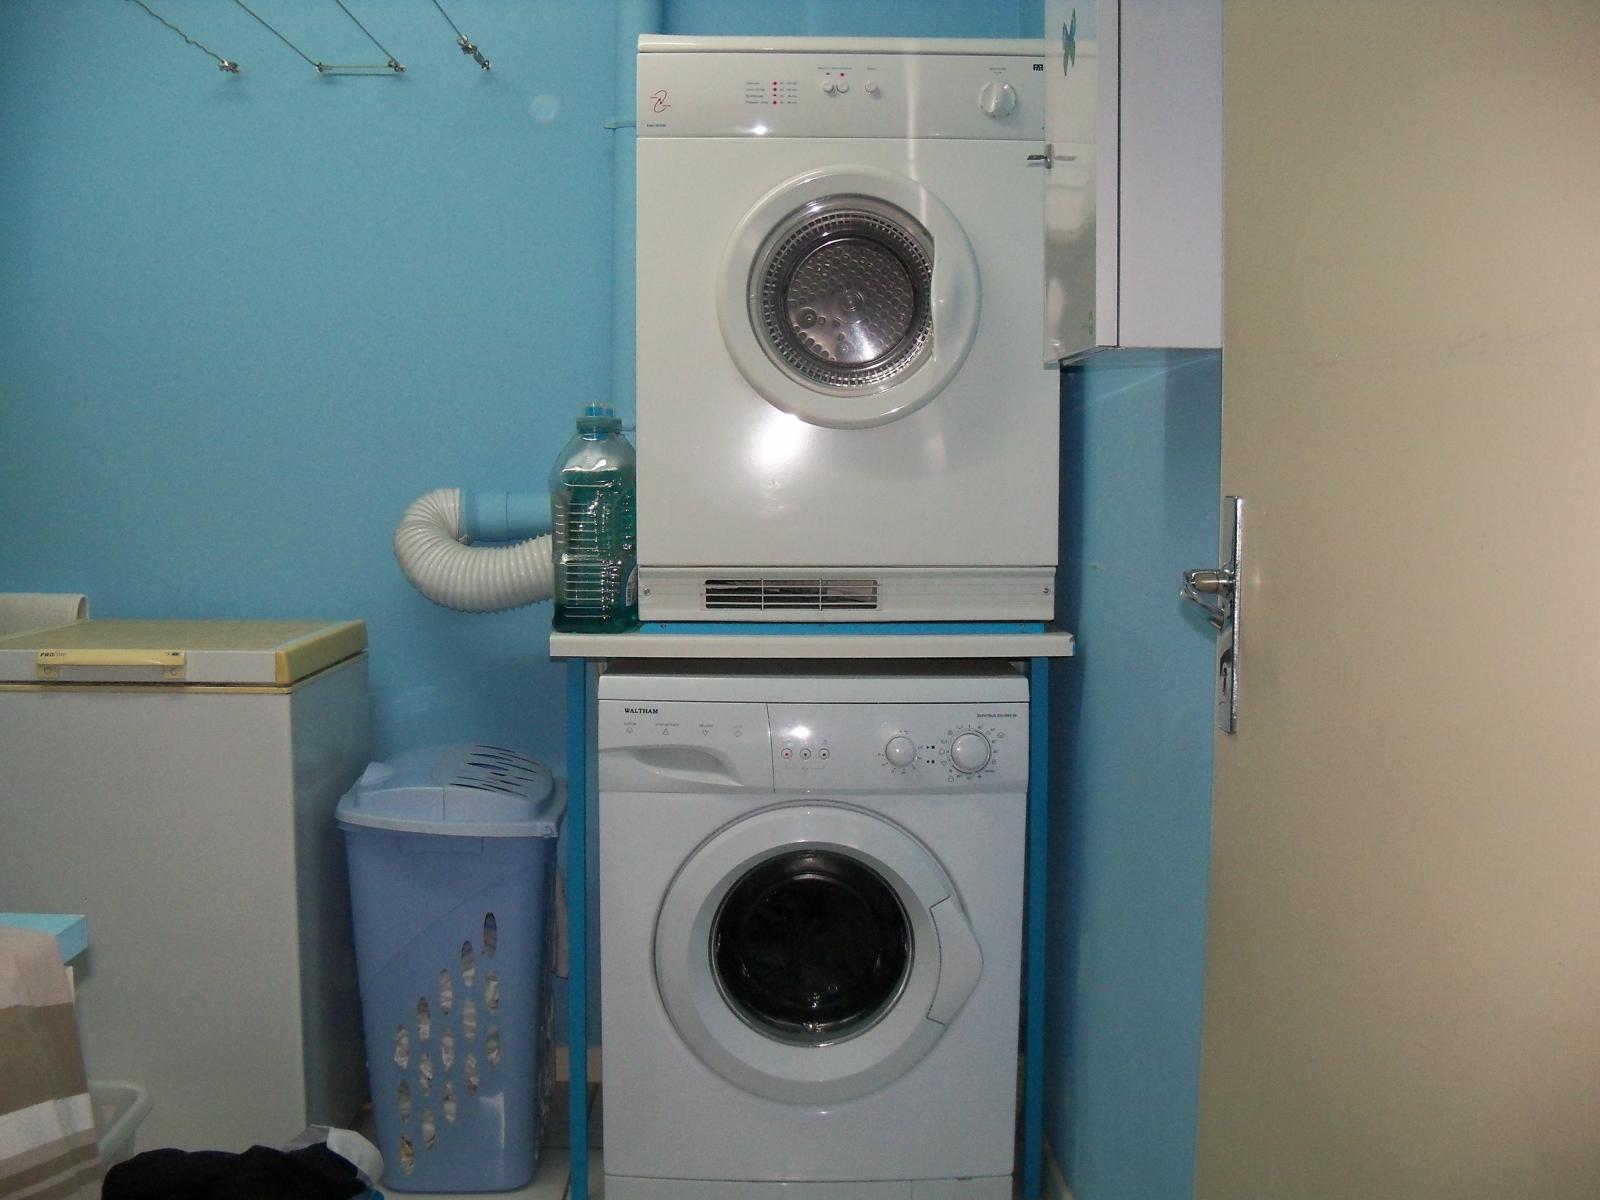 Comment surélever une machine à laver et un sèche-linge ? - Skan